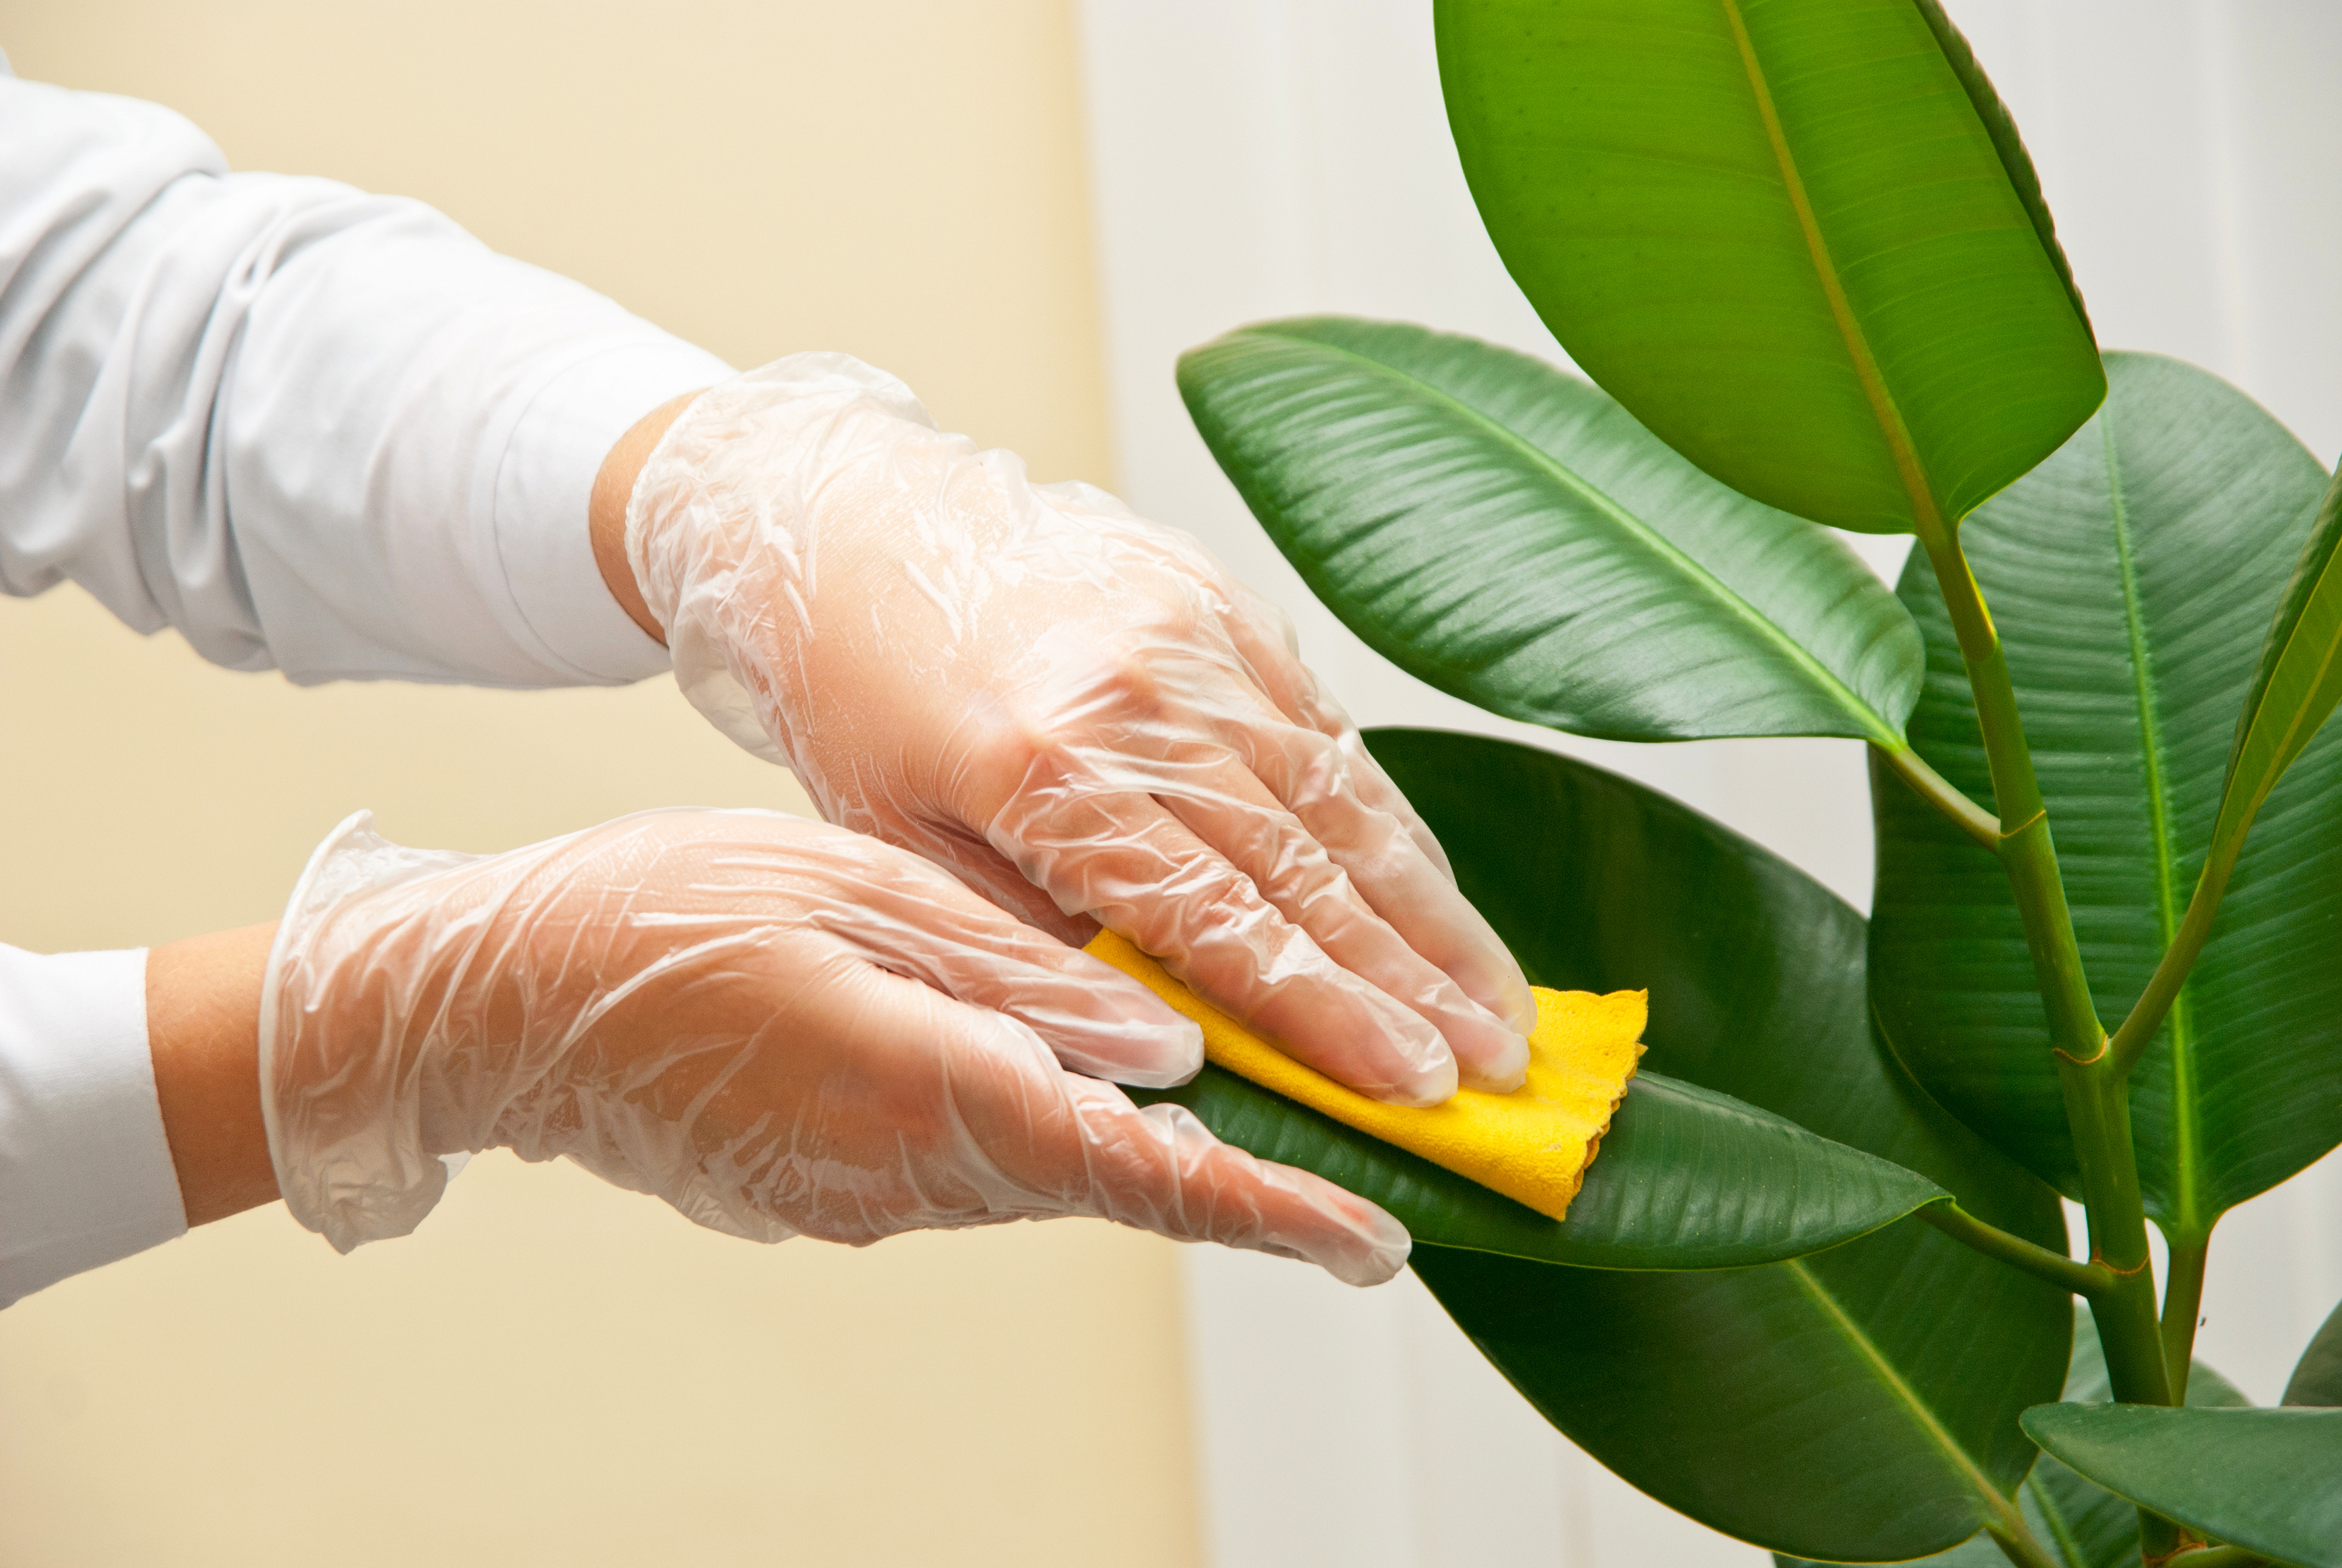 Para limpiar las plantas se puede usar un trapo suave húmedo o uno de microfibra.